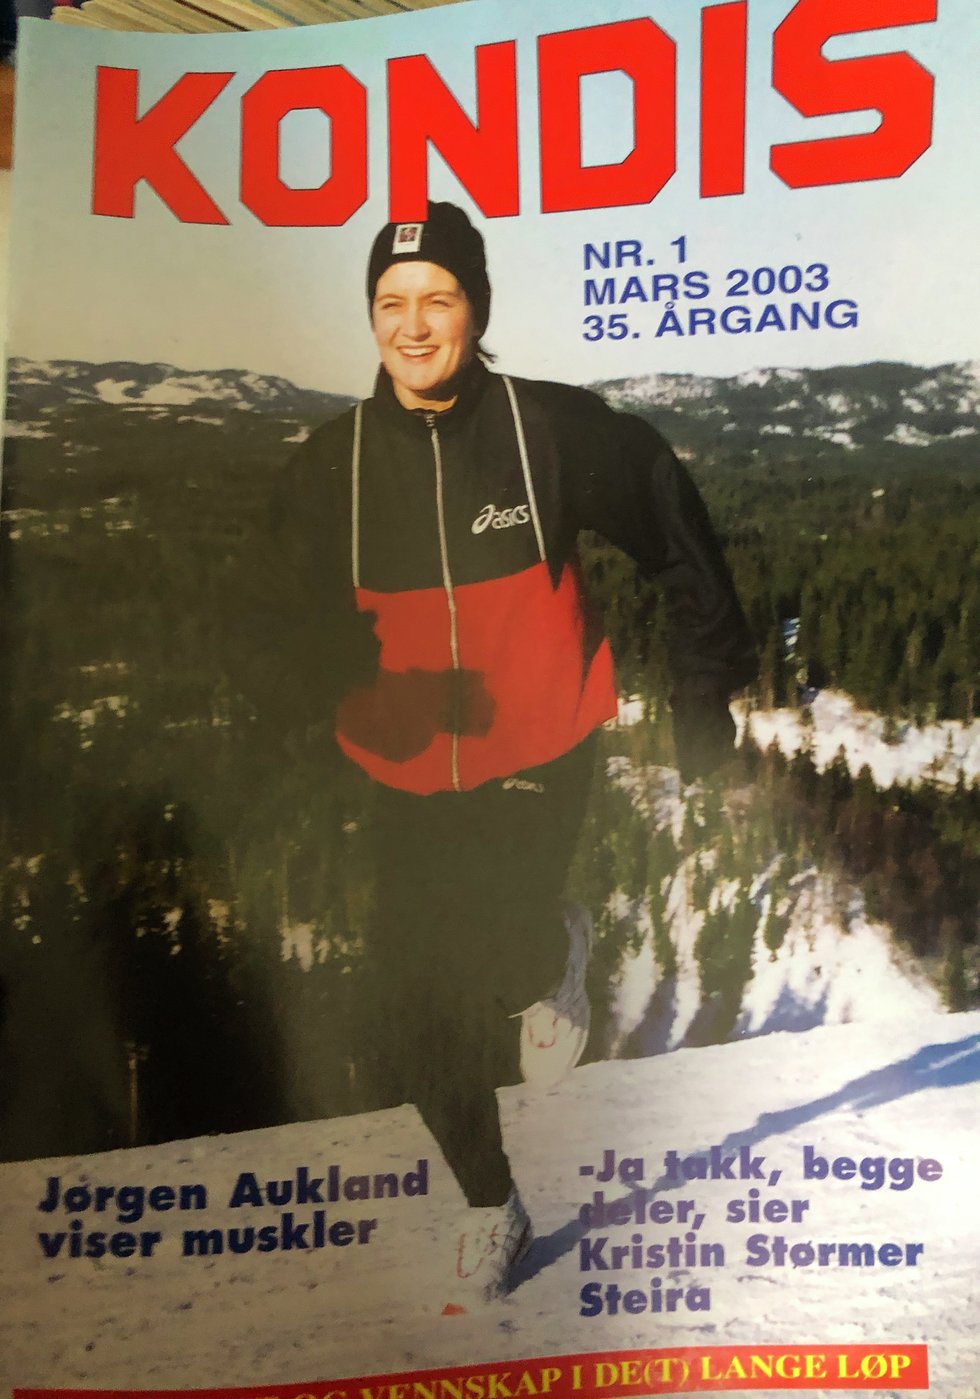 Siri Slotterøy Johnsen sitt Kondisblad fra 2003